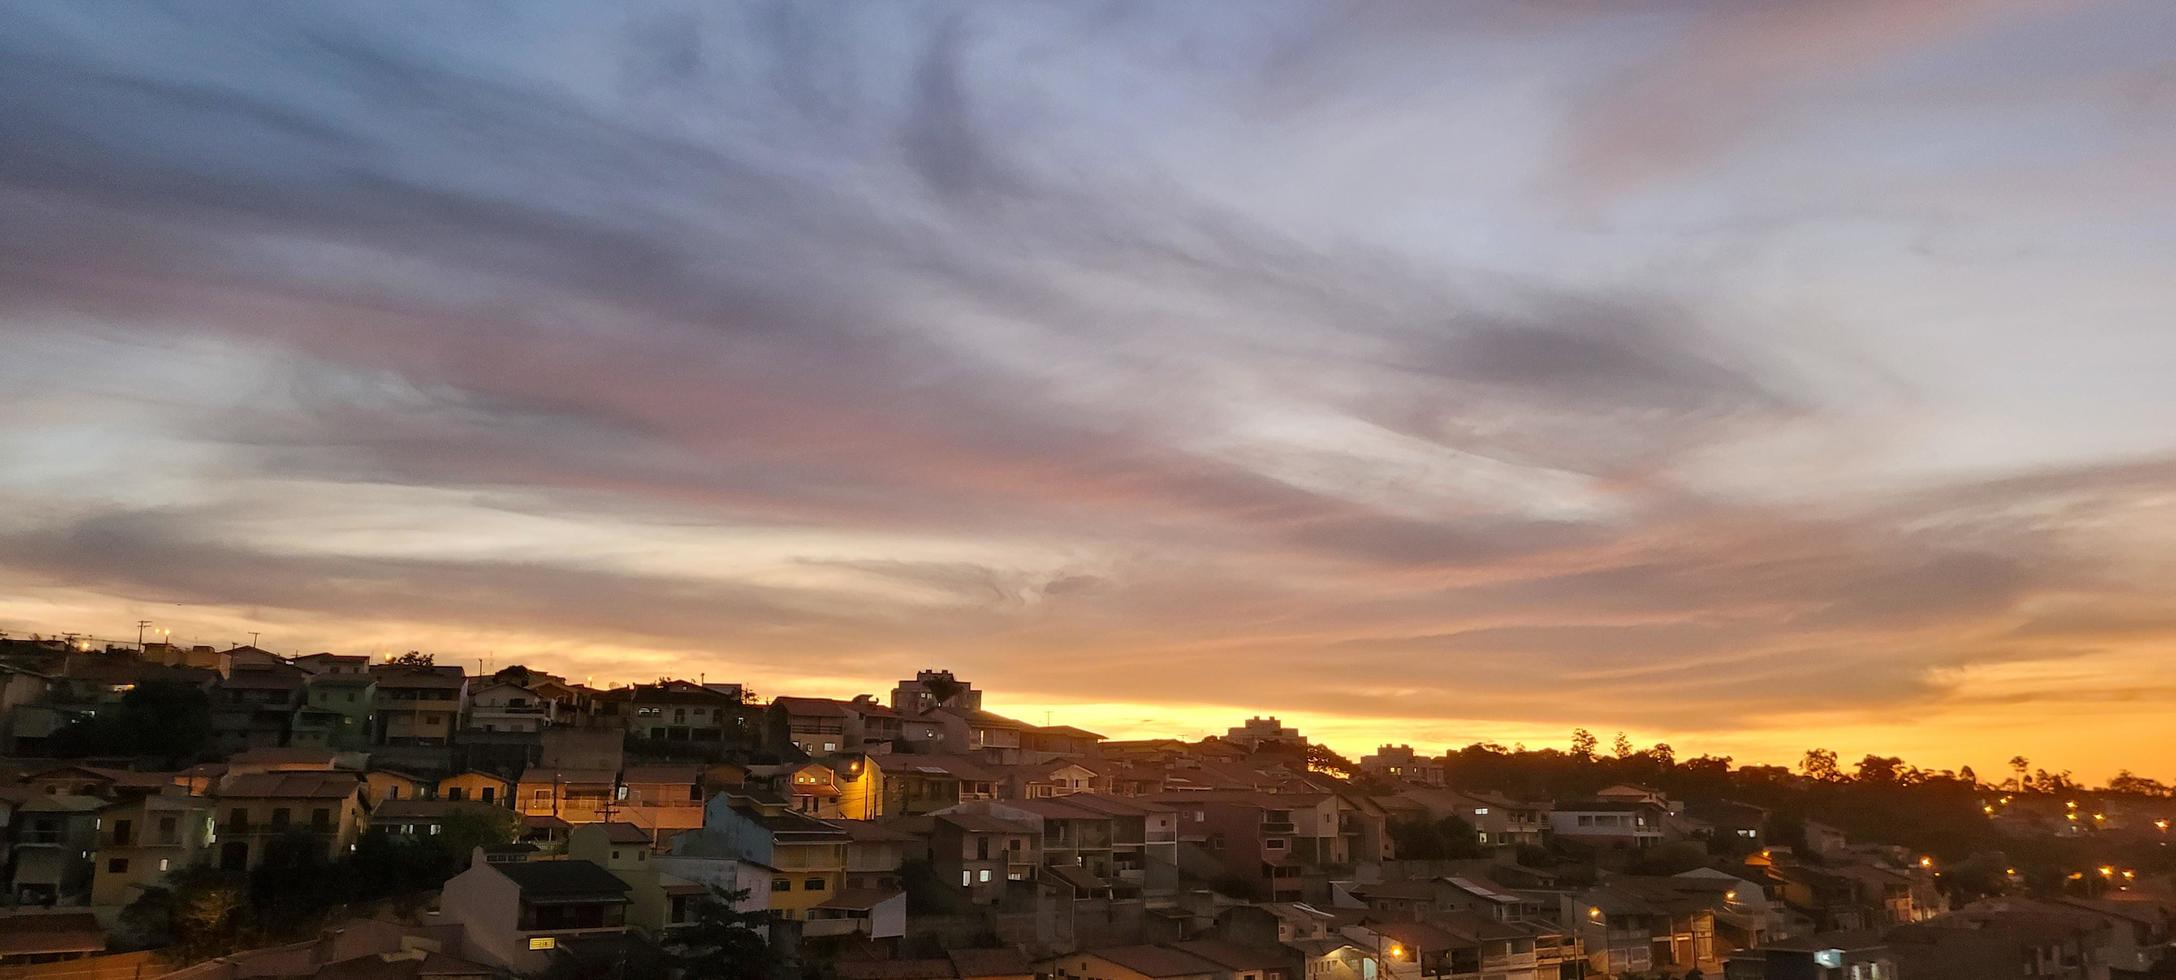 fondo de puesta de sol en la tarde en brasil foto